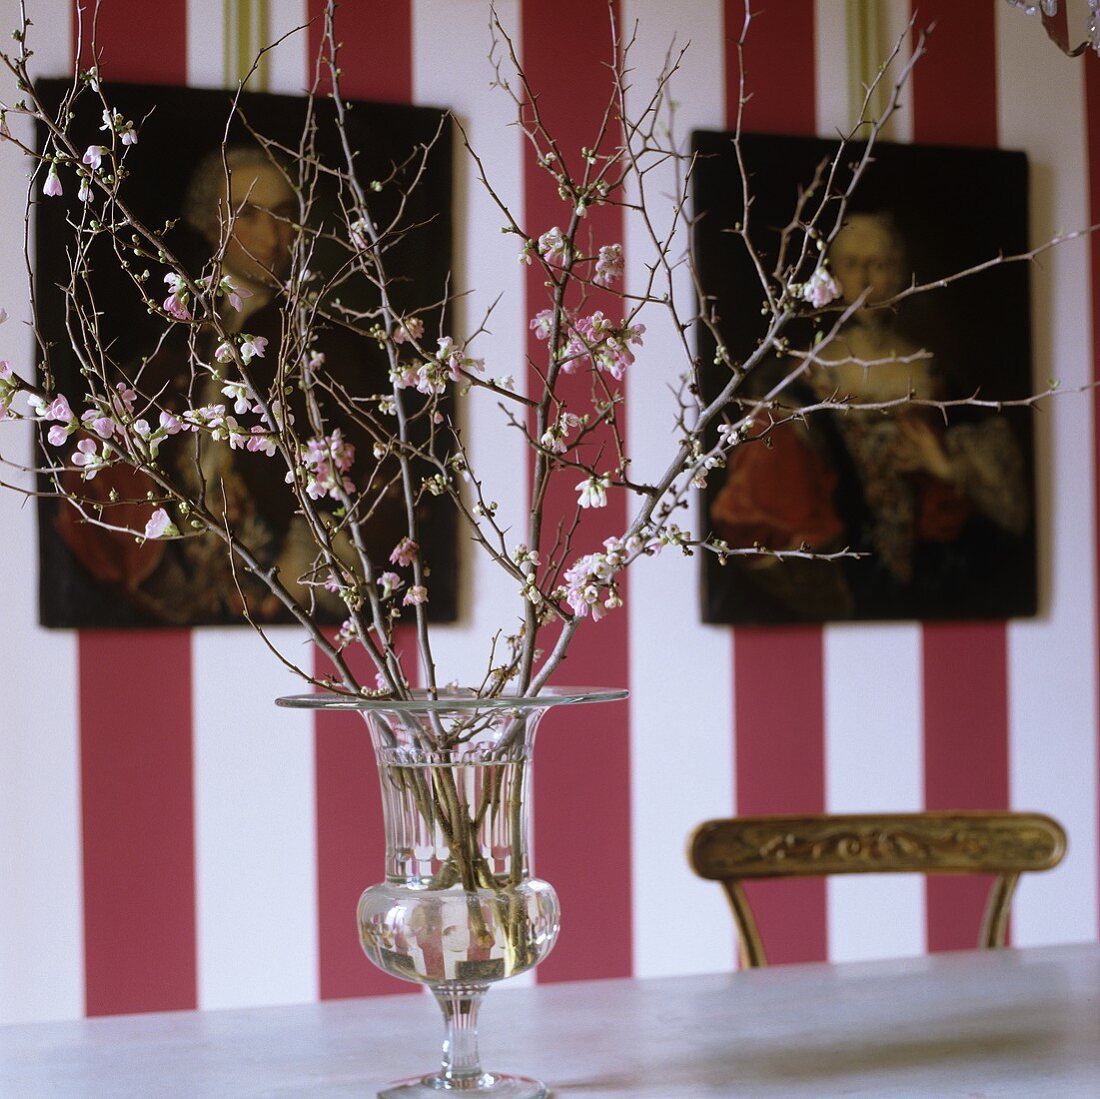 Blumenzweige in Glasvase vor rot weiss gestreifter Wand mit Bildern